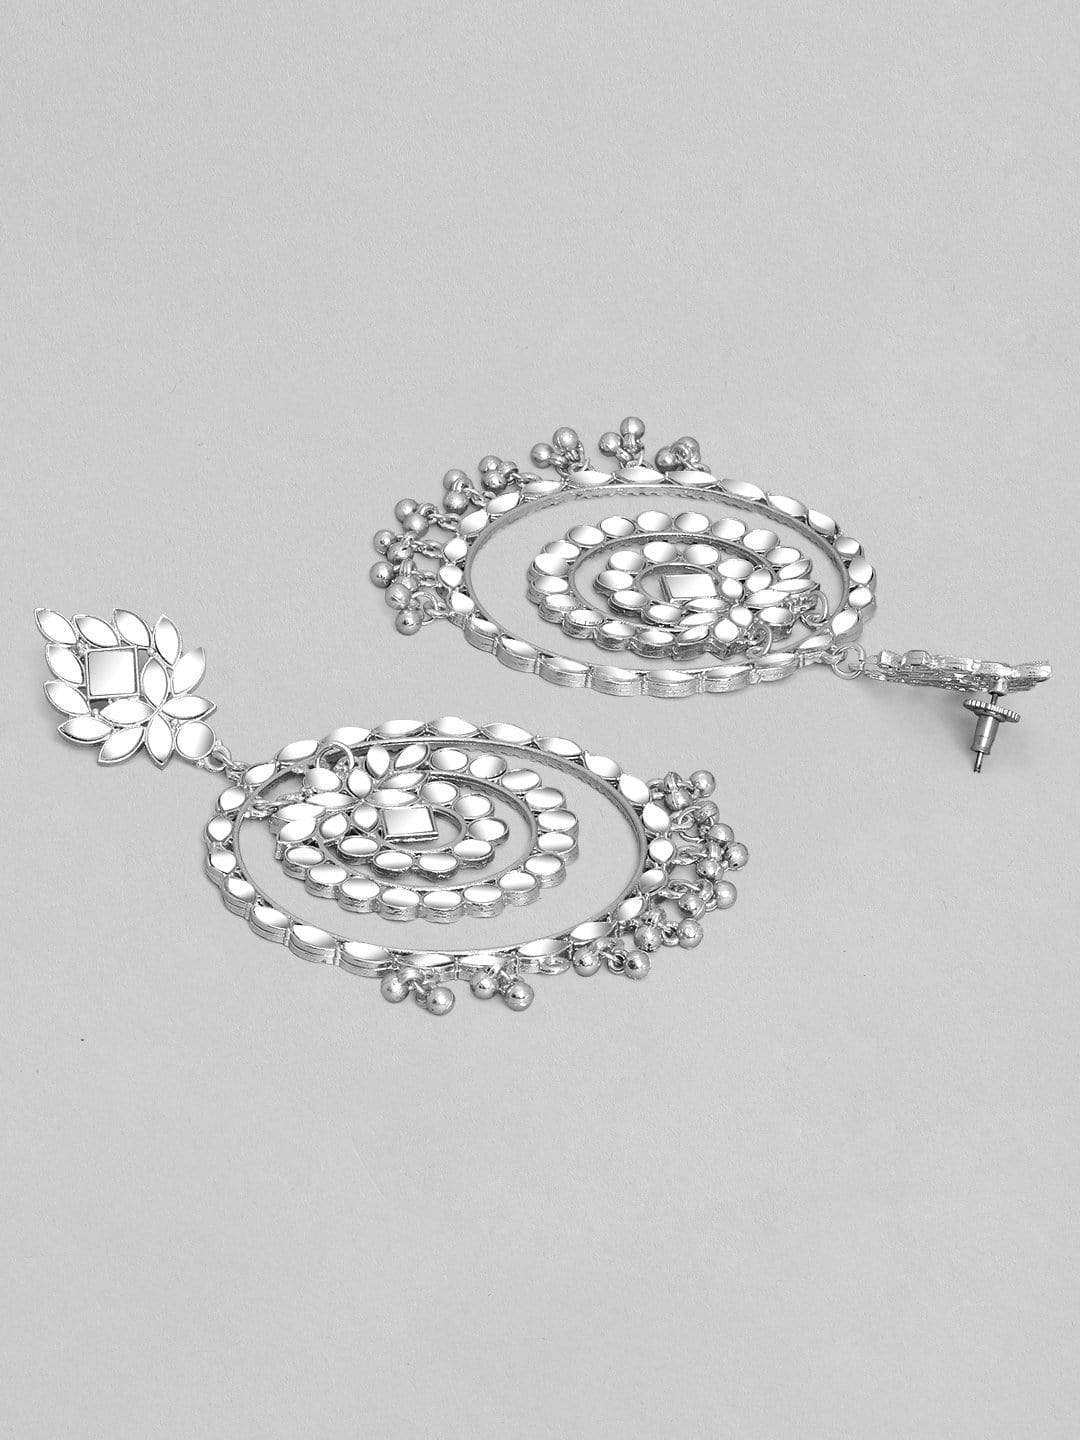 Rubans Silver Plated Festive Mirror Chandbali Earrings Earrings